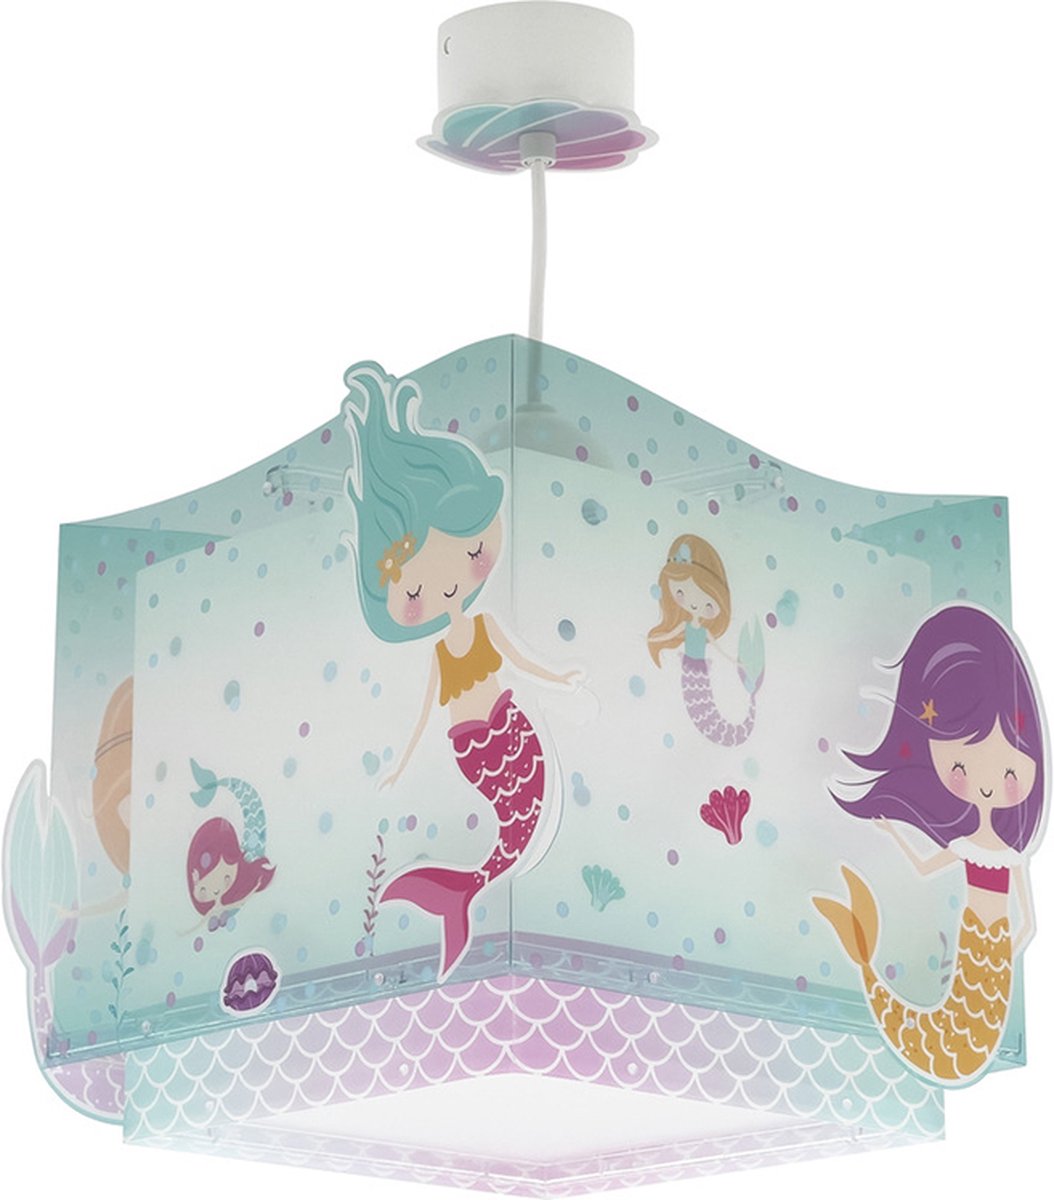 Dalber Mermaid - Kinderkamer hanglamp - Blauw;Roze